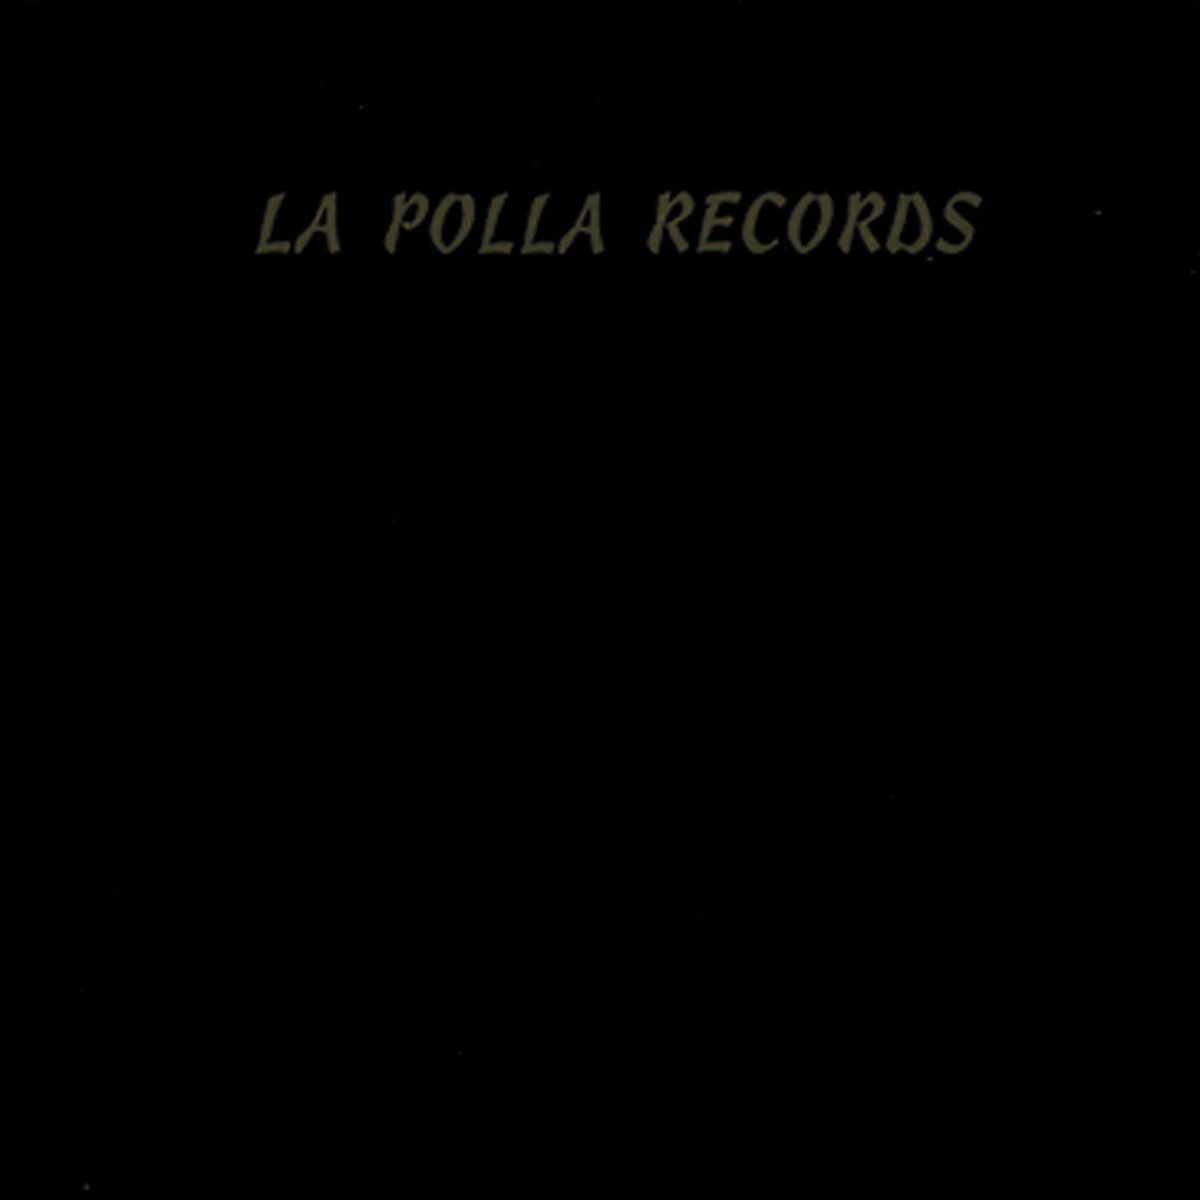 Txt records. La polla records футболка.